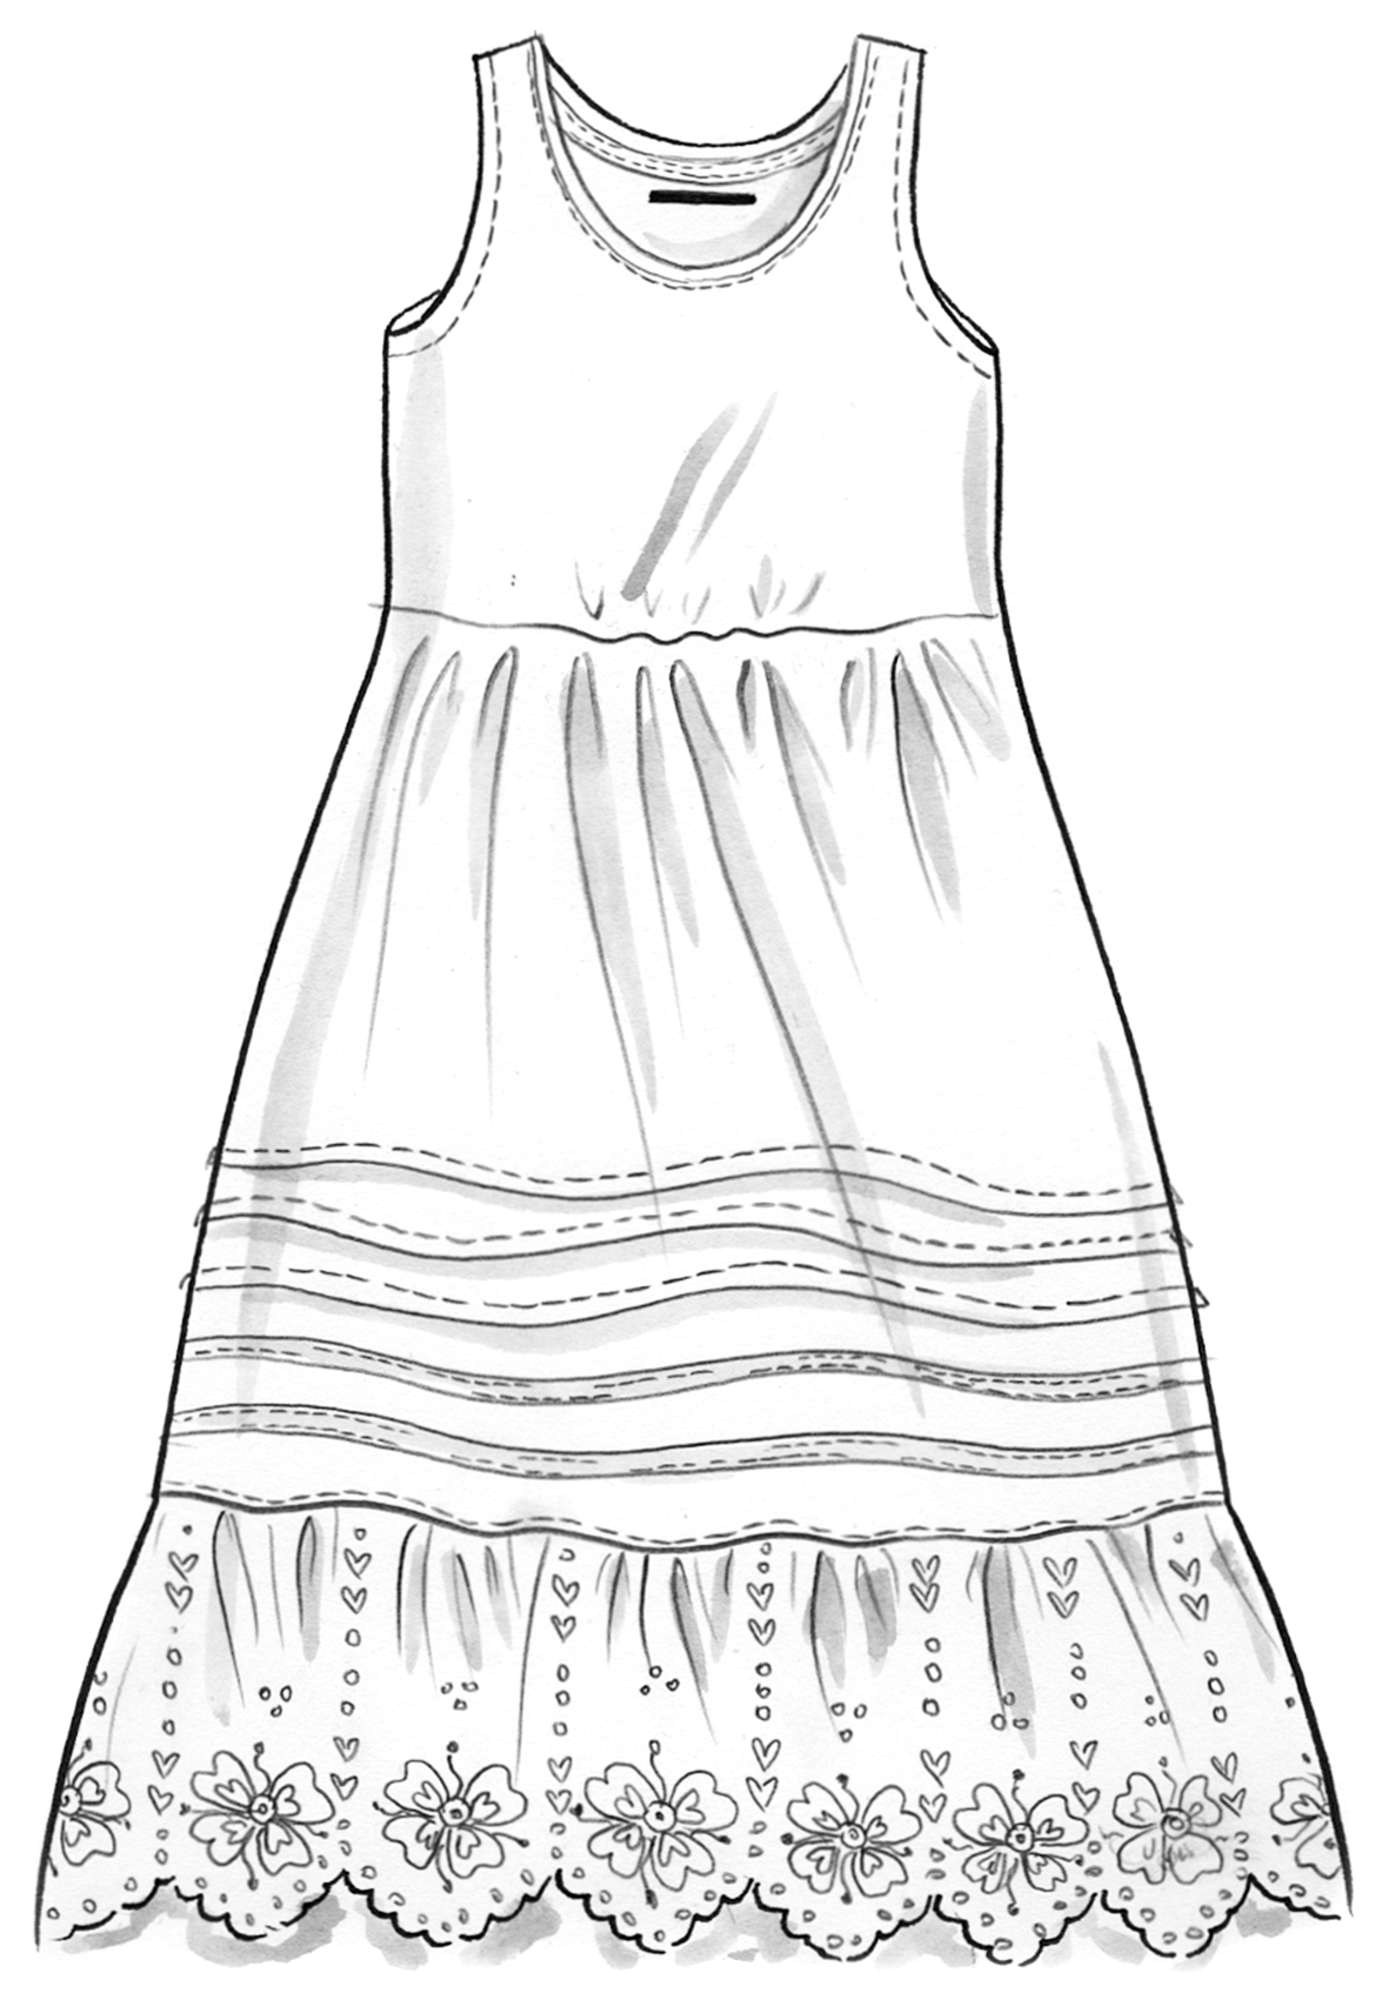 Vevd kjole i økologisk bomull